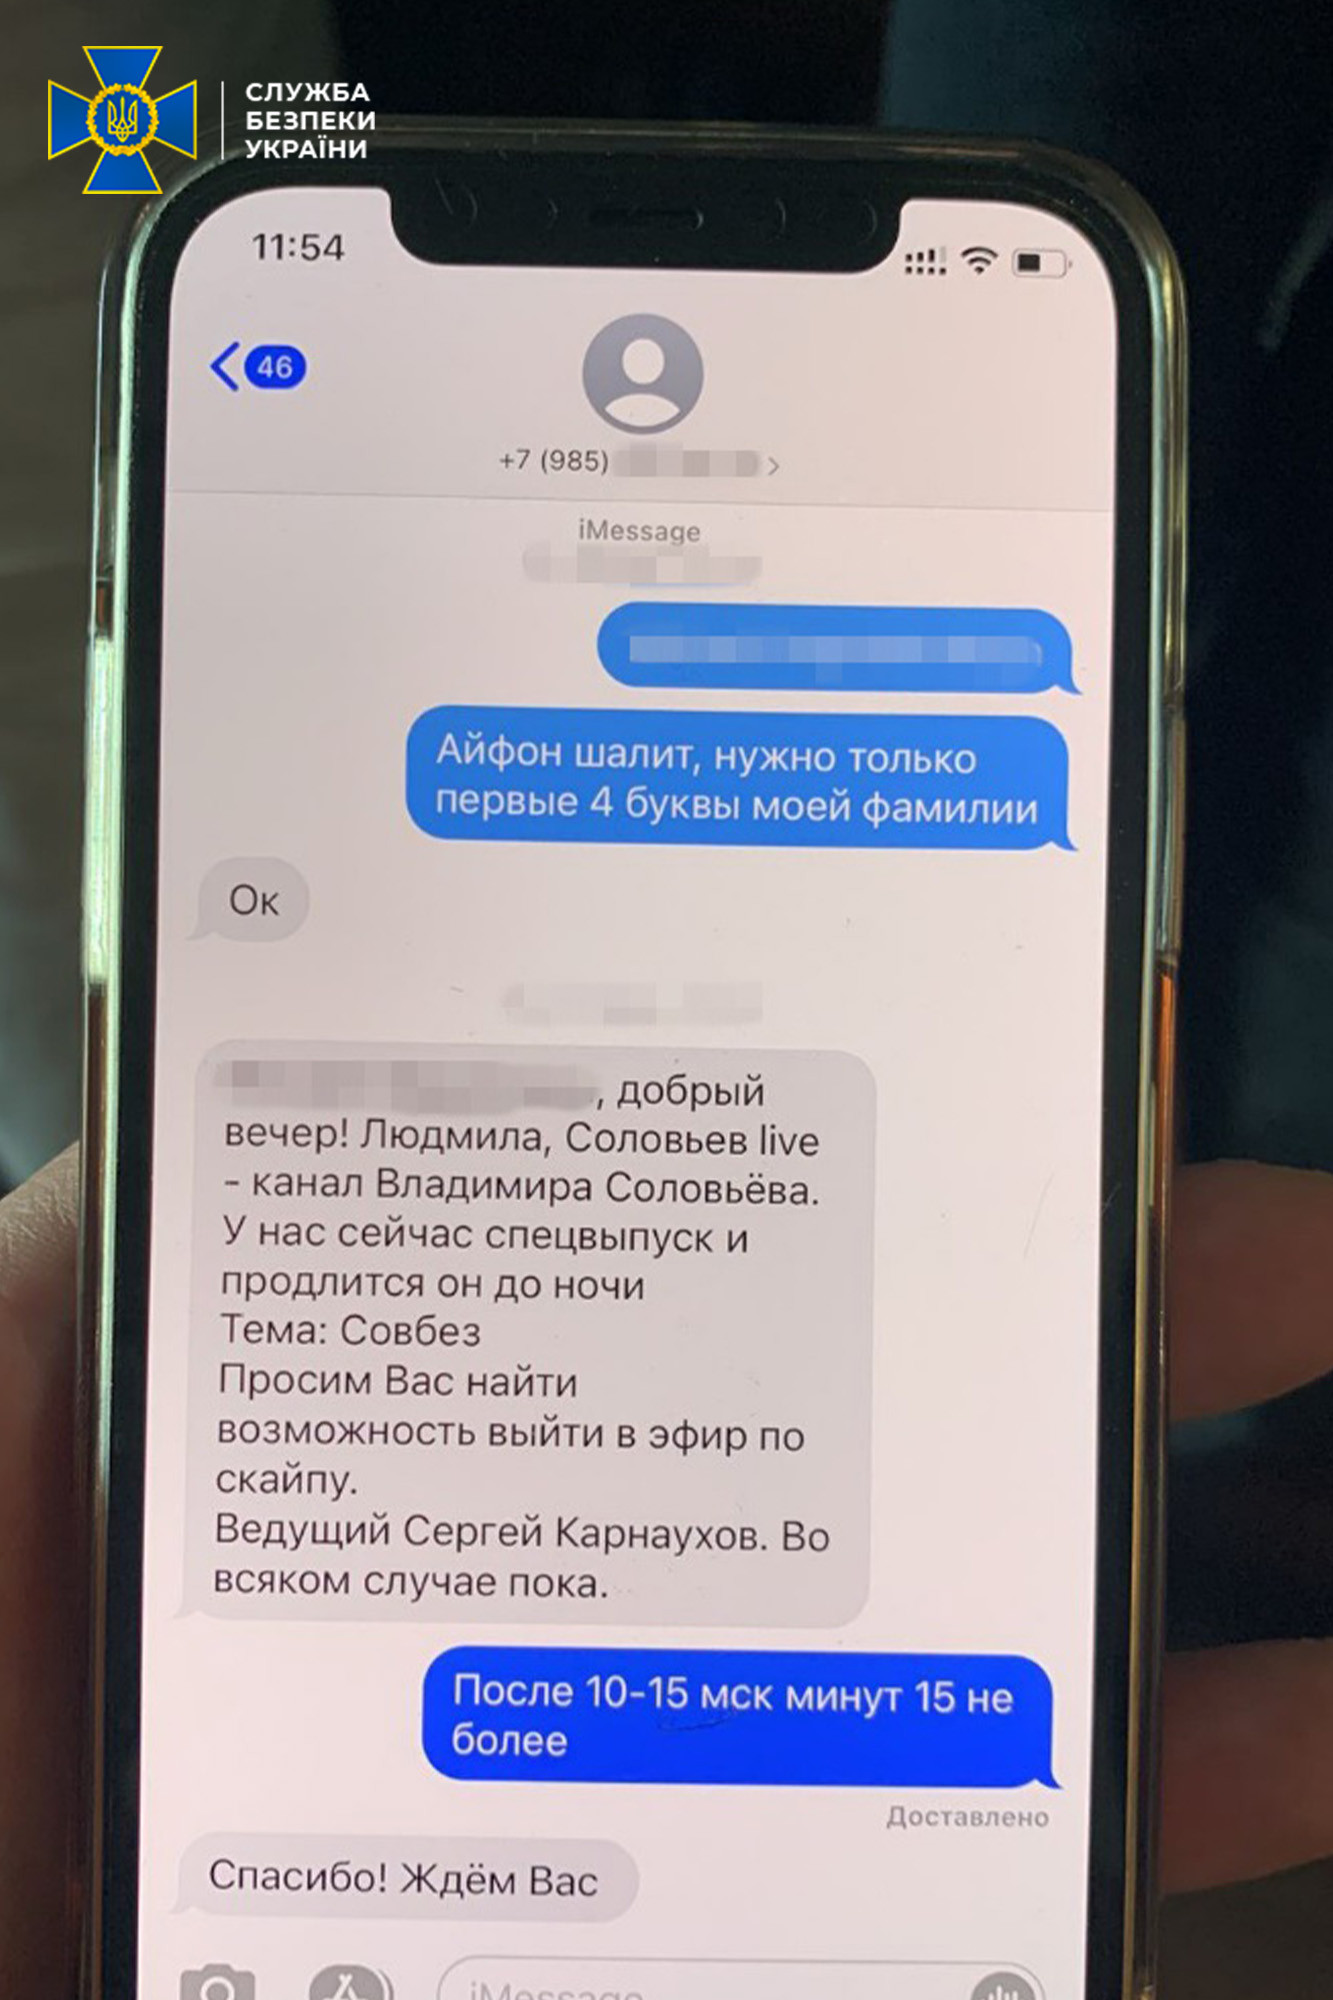 СБУ сообщила о подозрении в госизмене политтехнологу Медведчука – фото с обысков